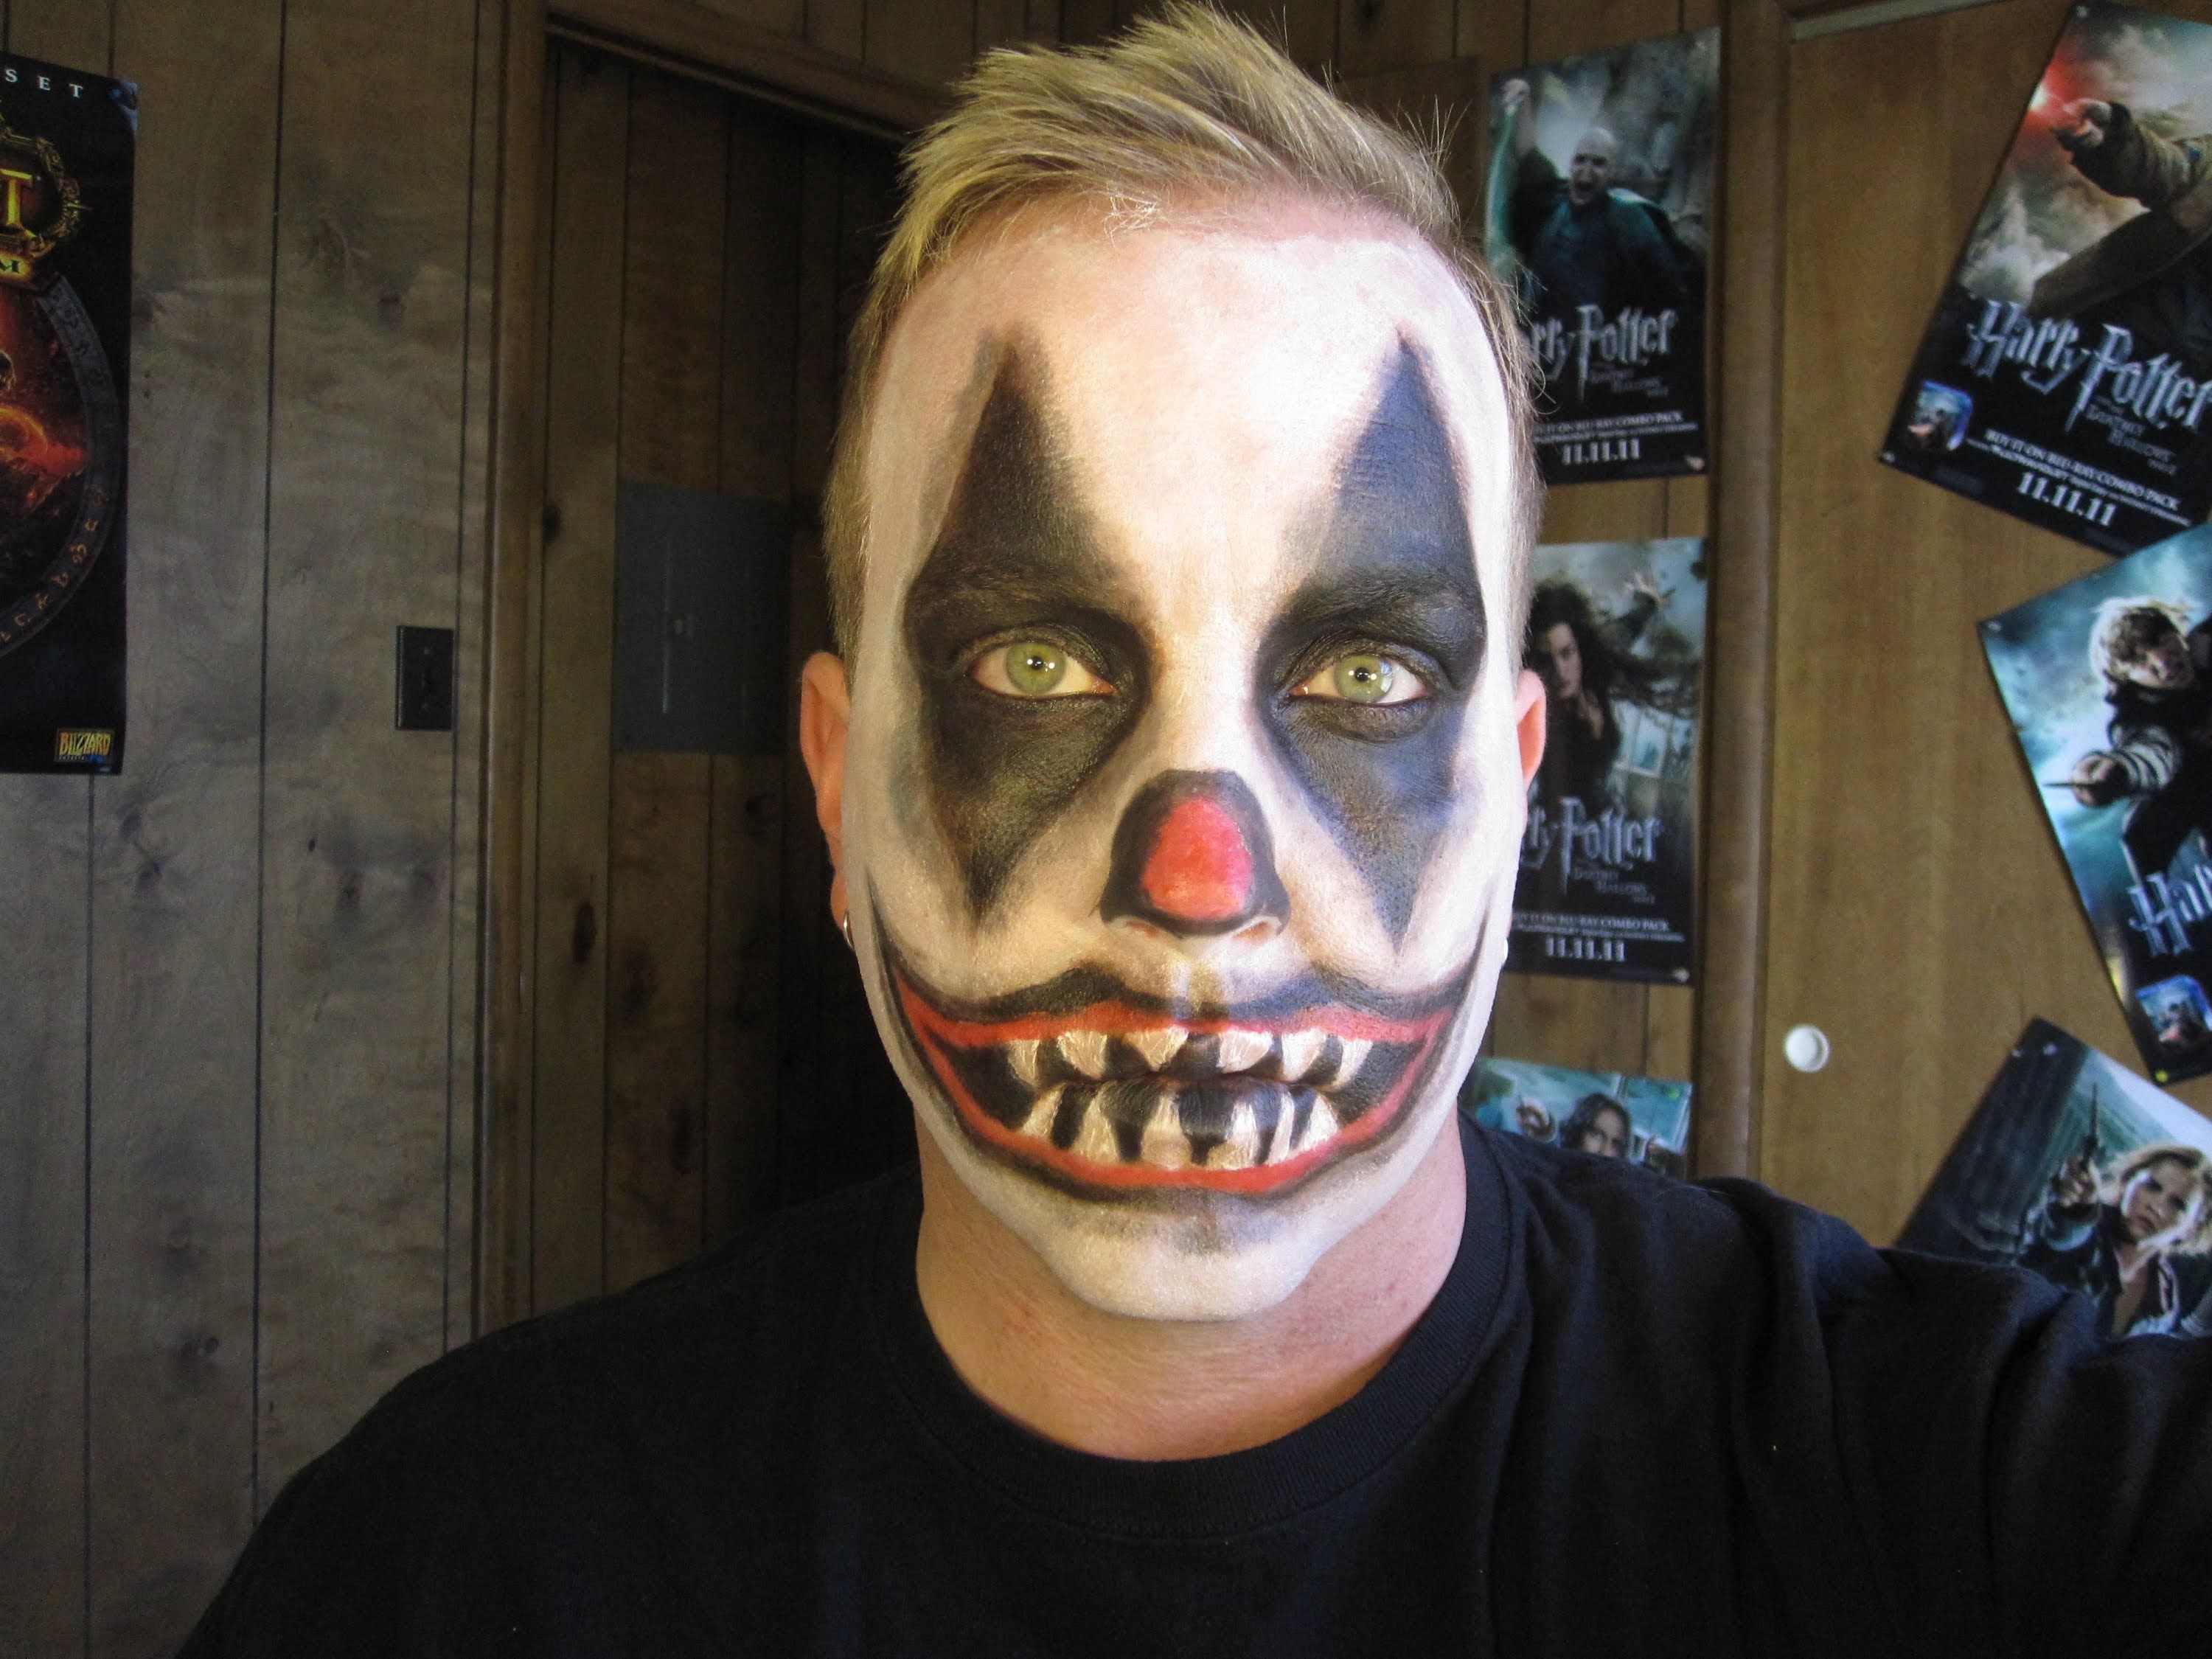 clown makeup ideas boy